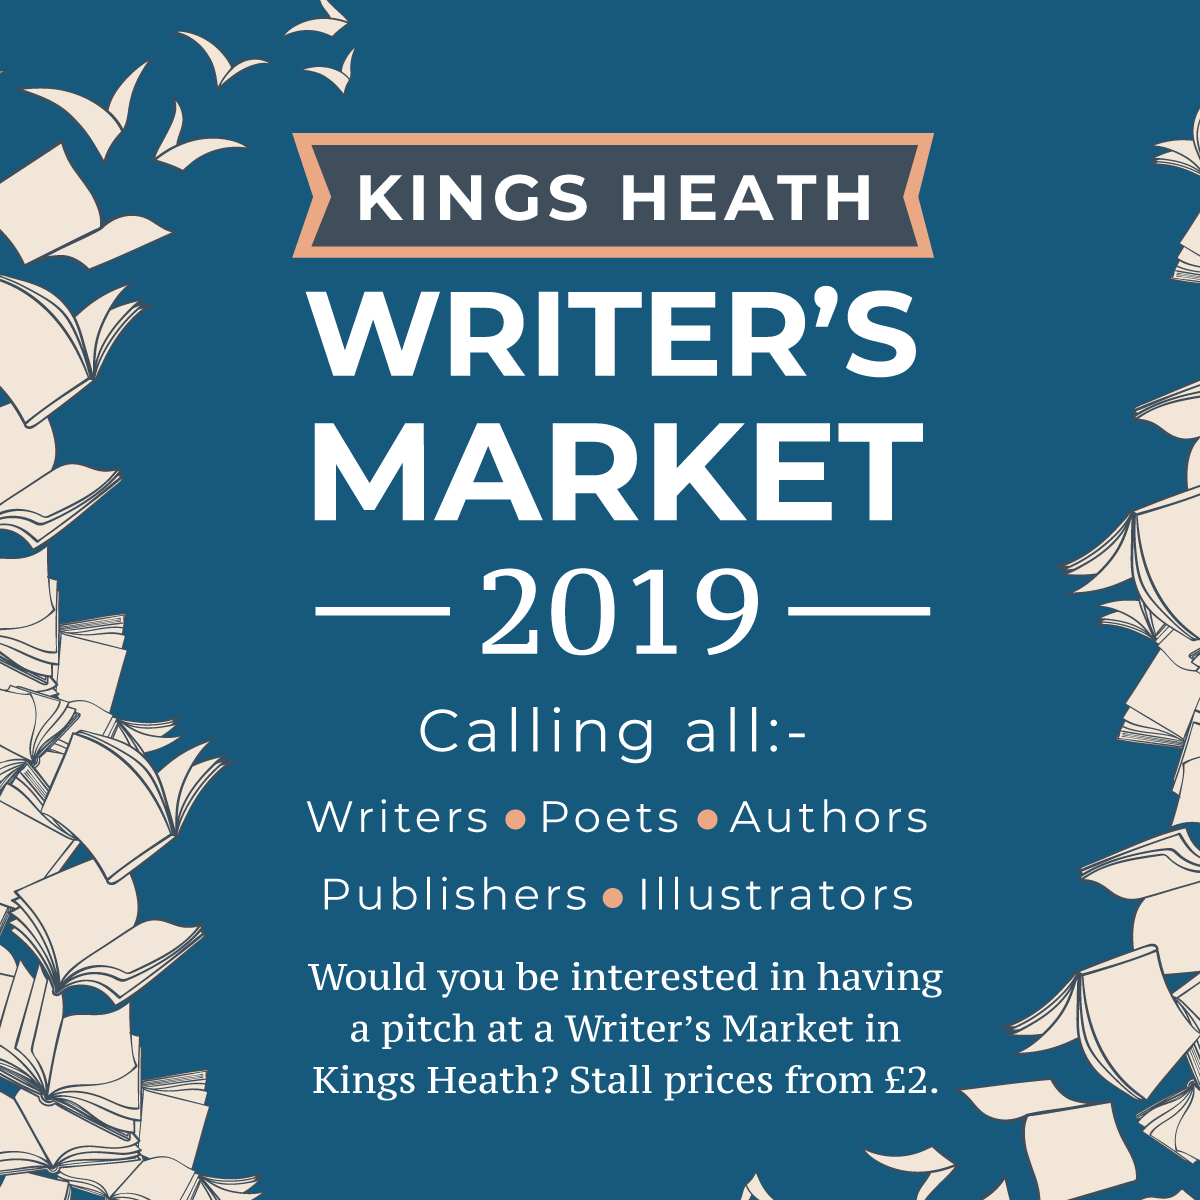 Kings Heath Writer's Market 2019 Enjoy Kings Heath